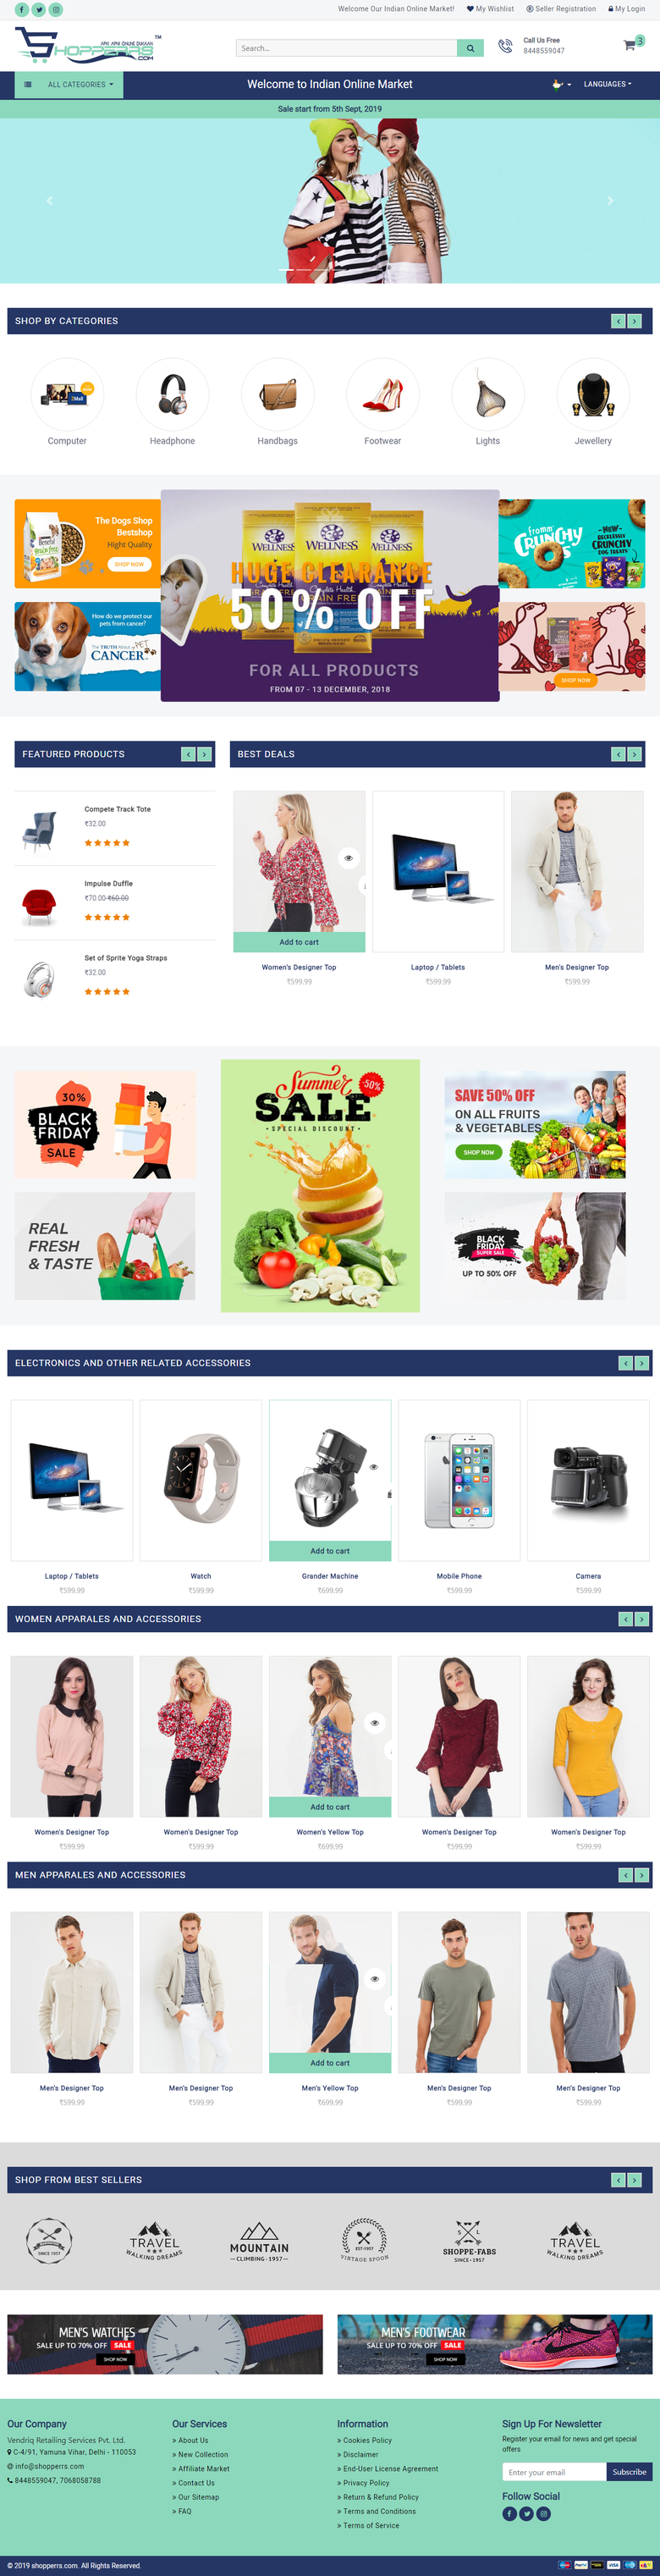 Shopperrs laravel website